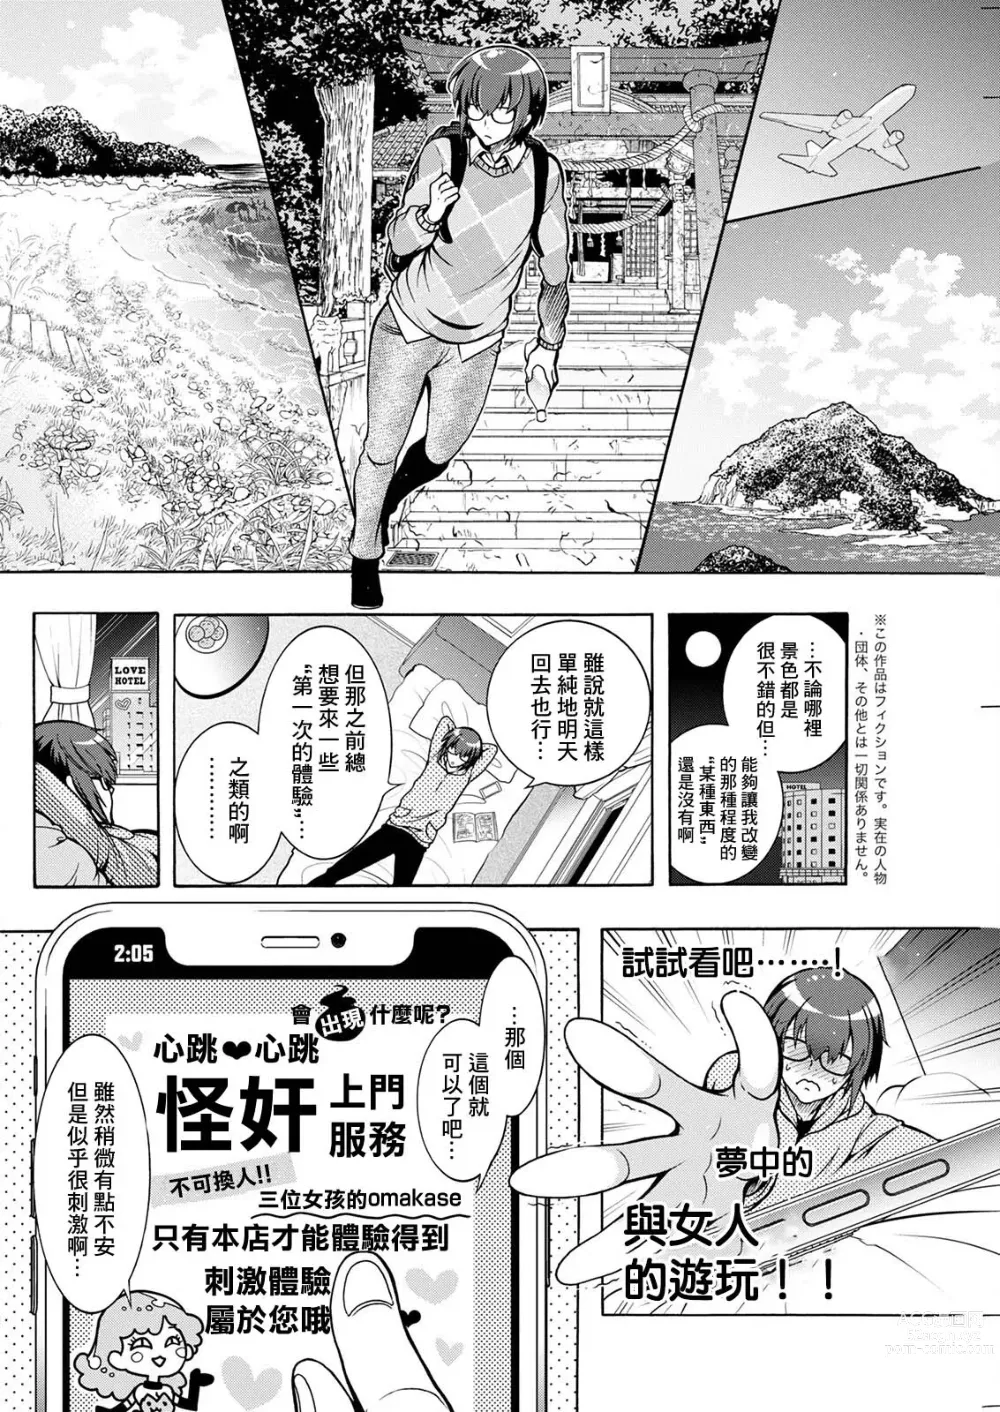 Page 2 of manga Youkai Echichi Ch. 5